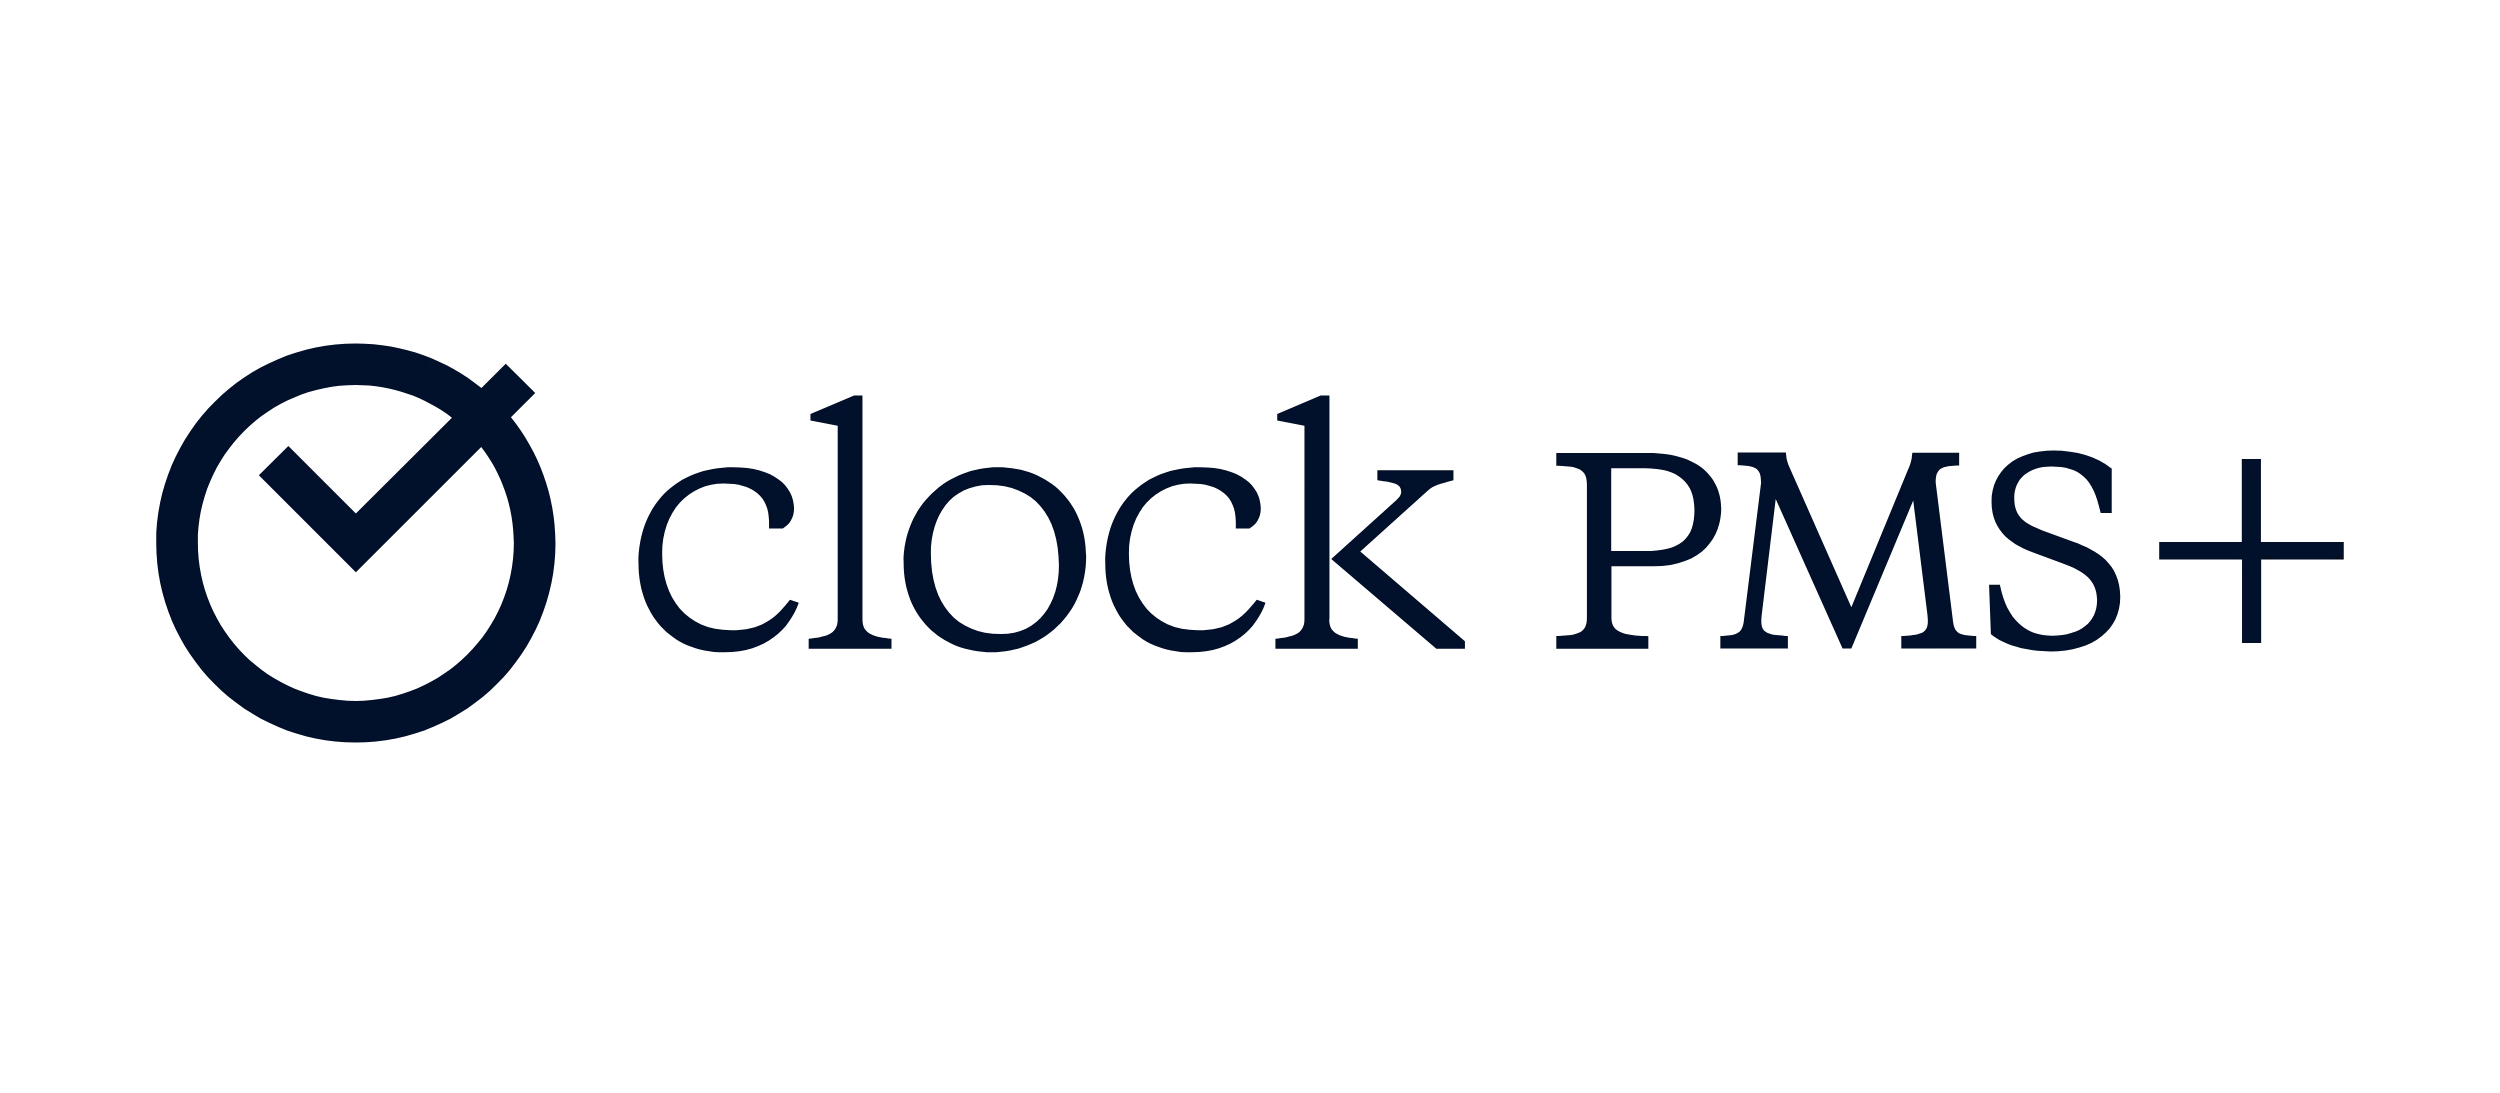 clock pms logo